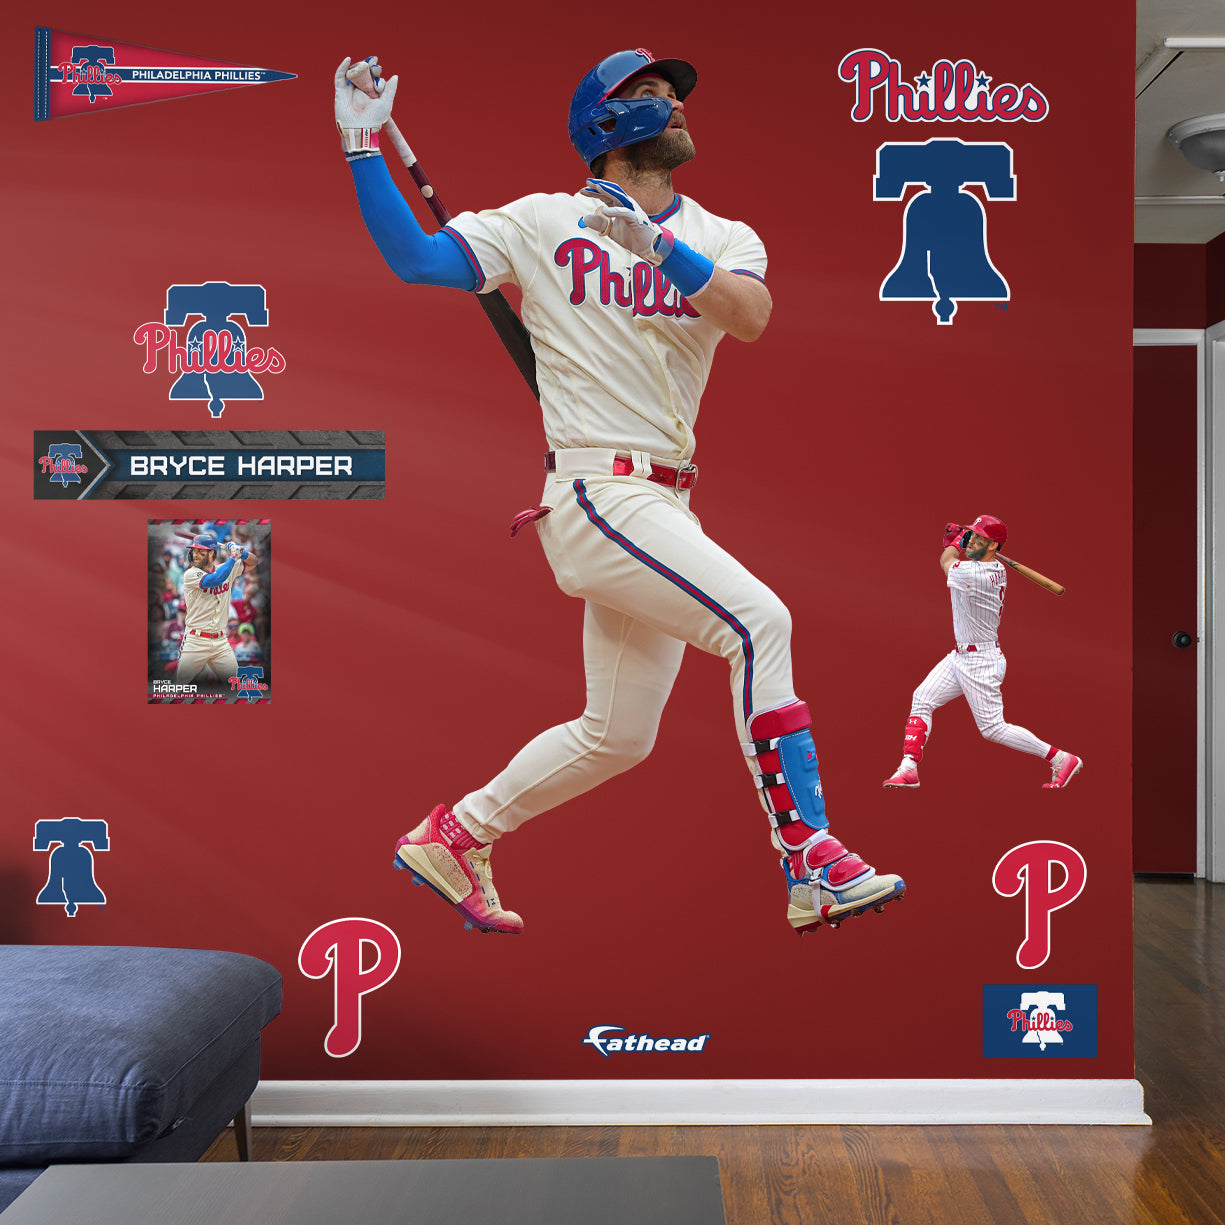 Phillies Wallpaper Discover more Baseball, MLB, Philadelphia